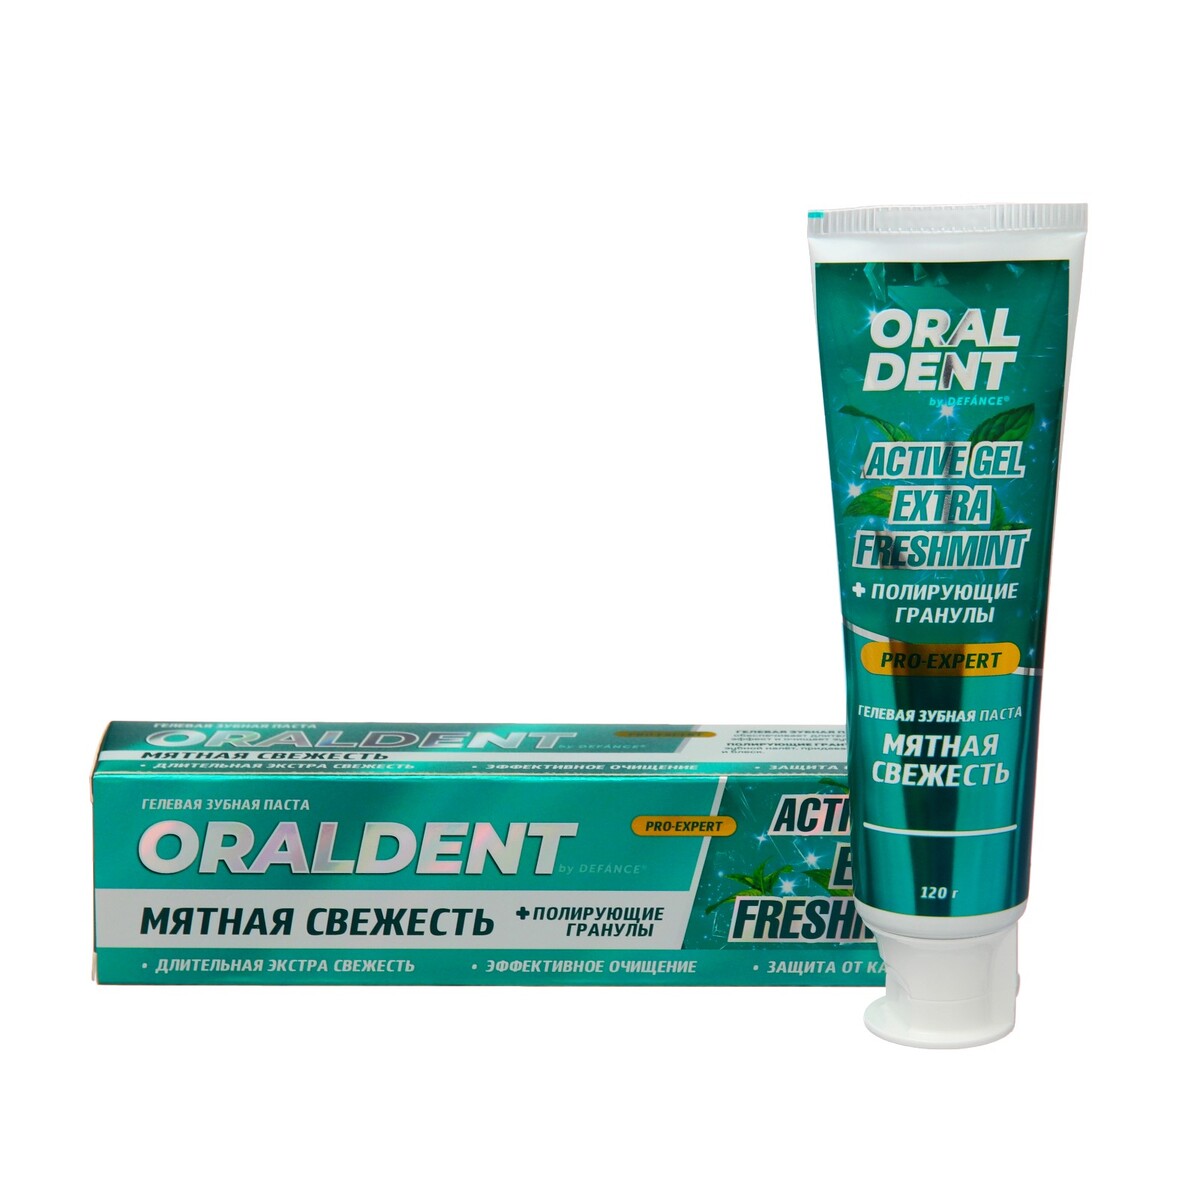 Зубная паста defance oraldent active gel extra freshmint, 120 г зубная паста сплат экстра отбеливание 75мл